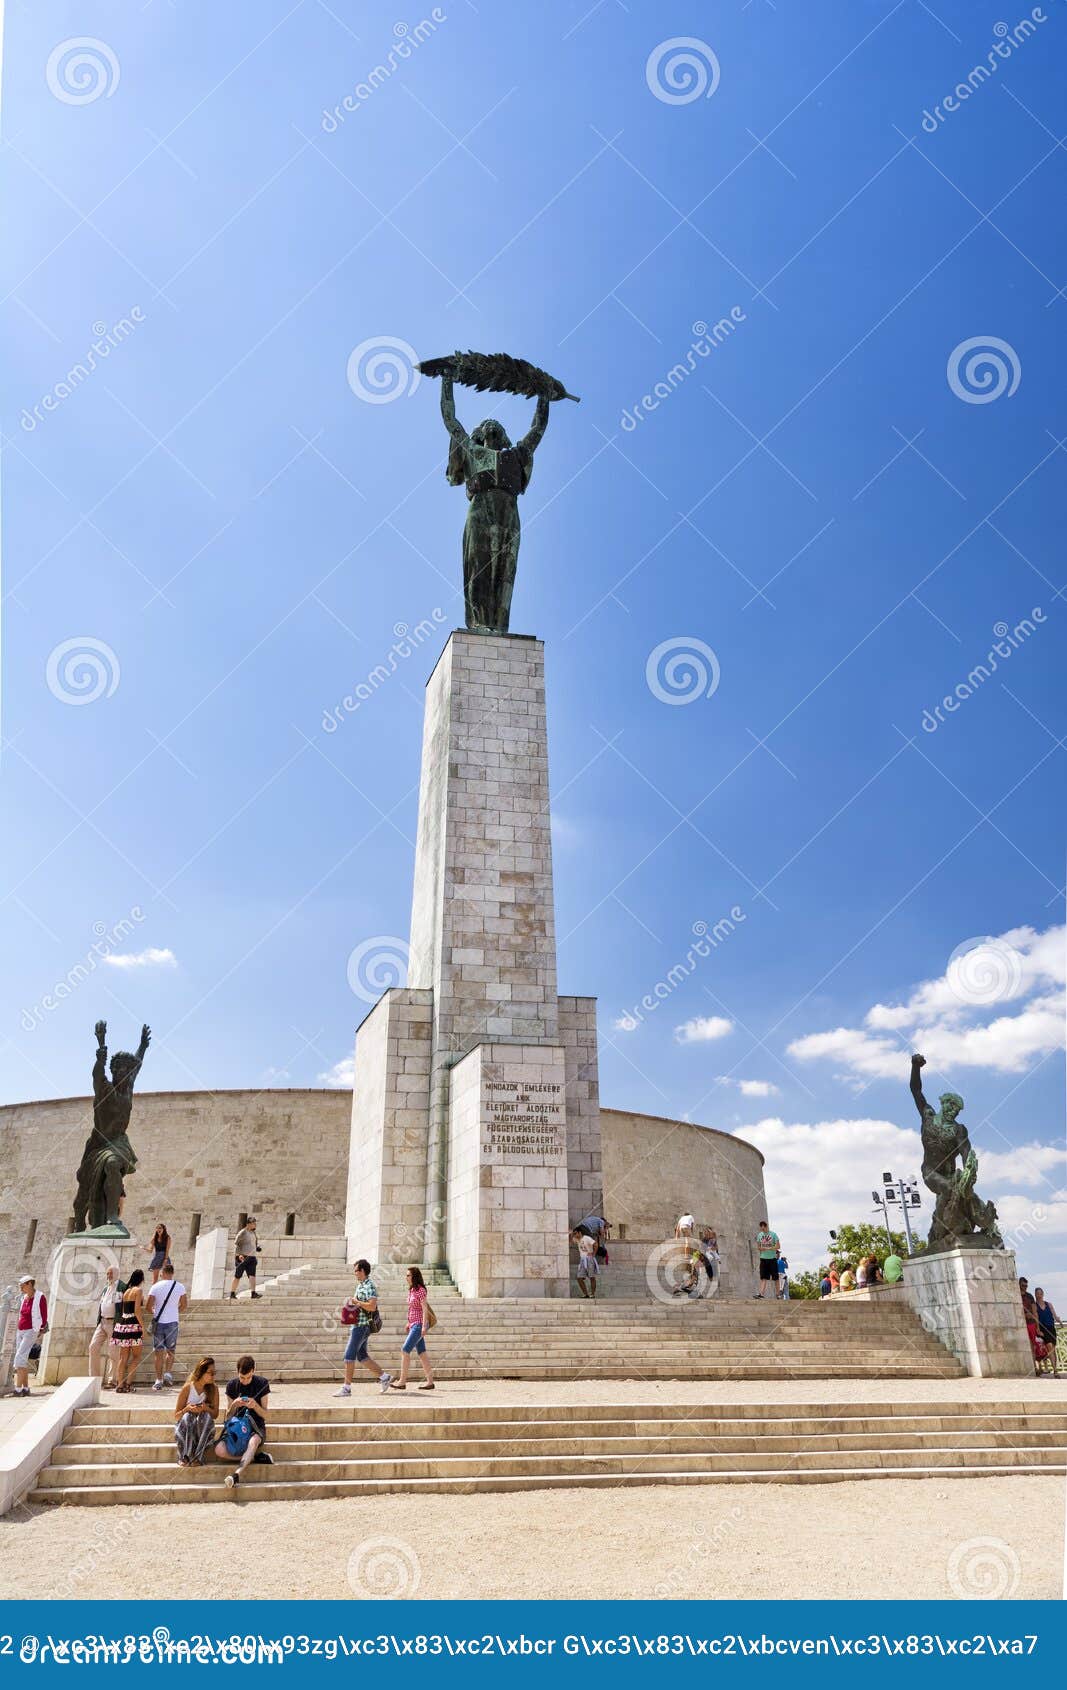 estatua-de-la-libertad-budapest-hungr%C3%ADa-56882272.jpg